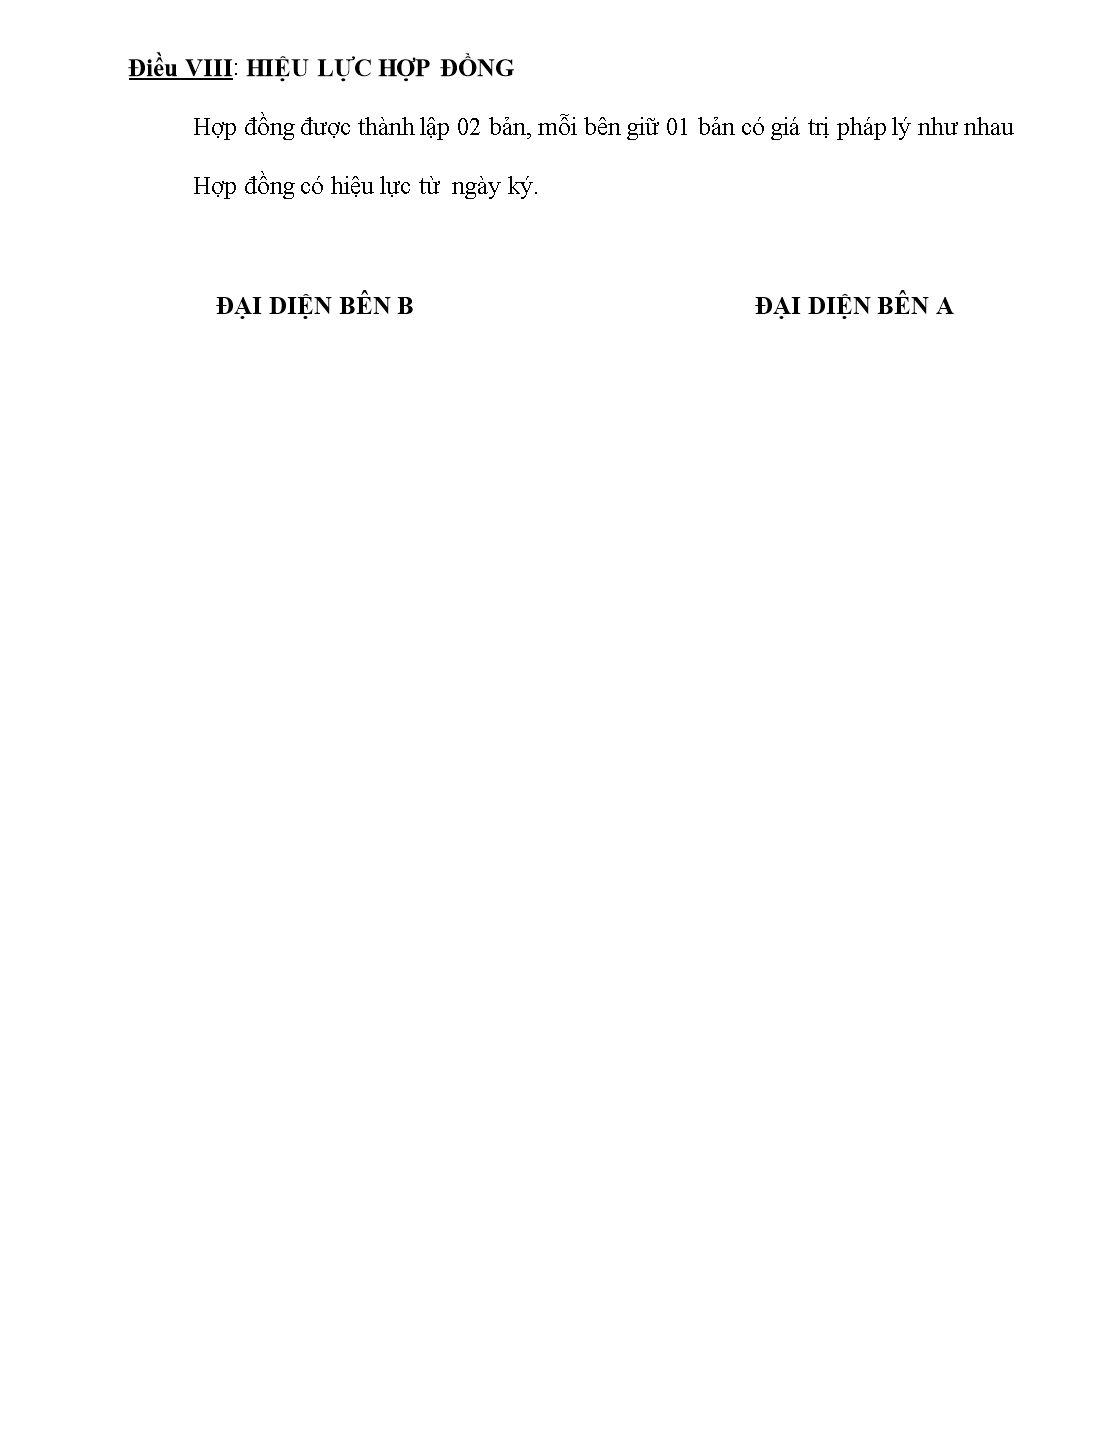 Biểu mẫu tổng hợp các mẫu hợp đồng kinh tế hay trang 6